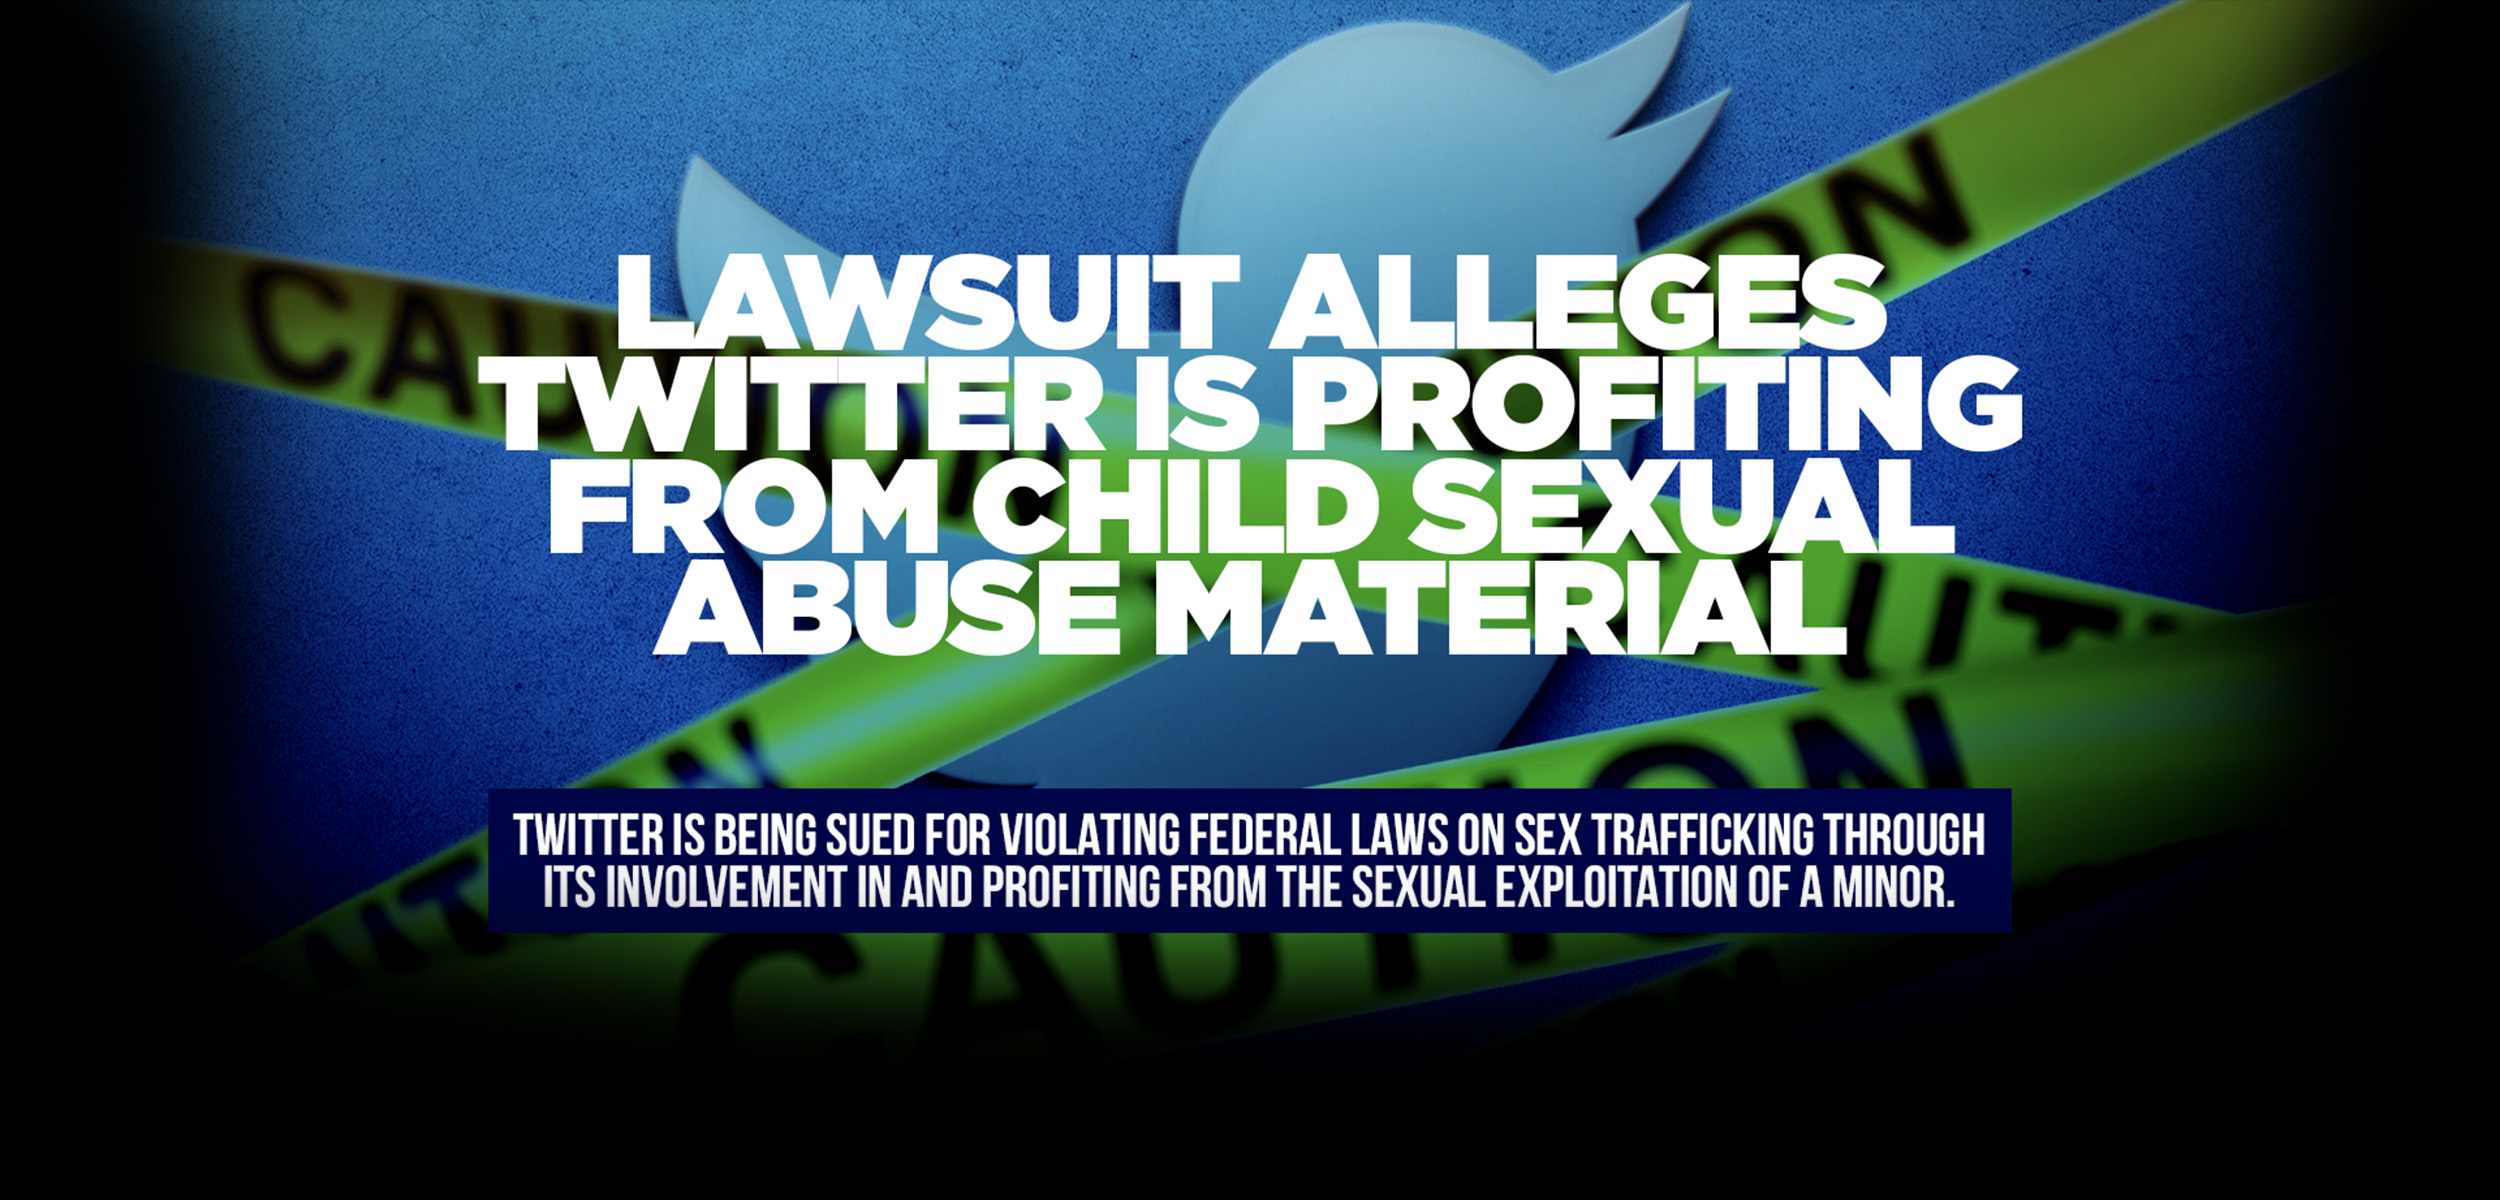 Header from federal lawsuit complaint against Twitter for John Doe vs. Twitter